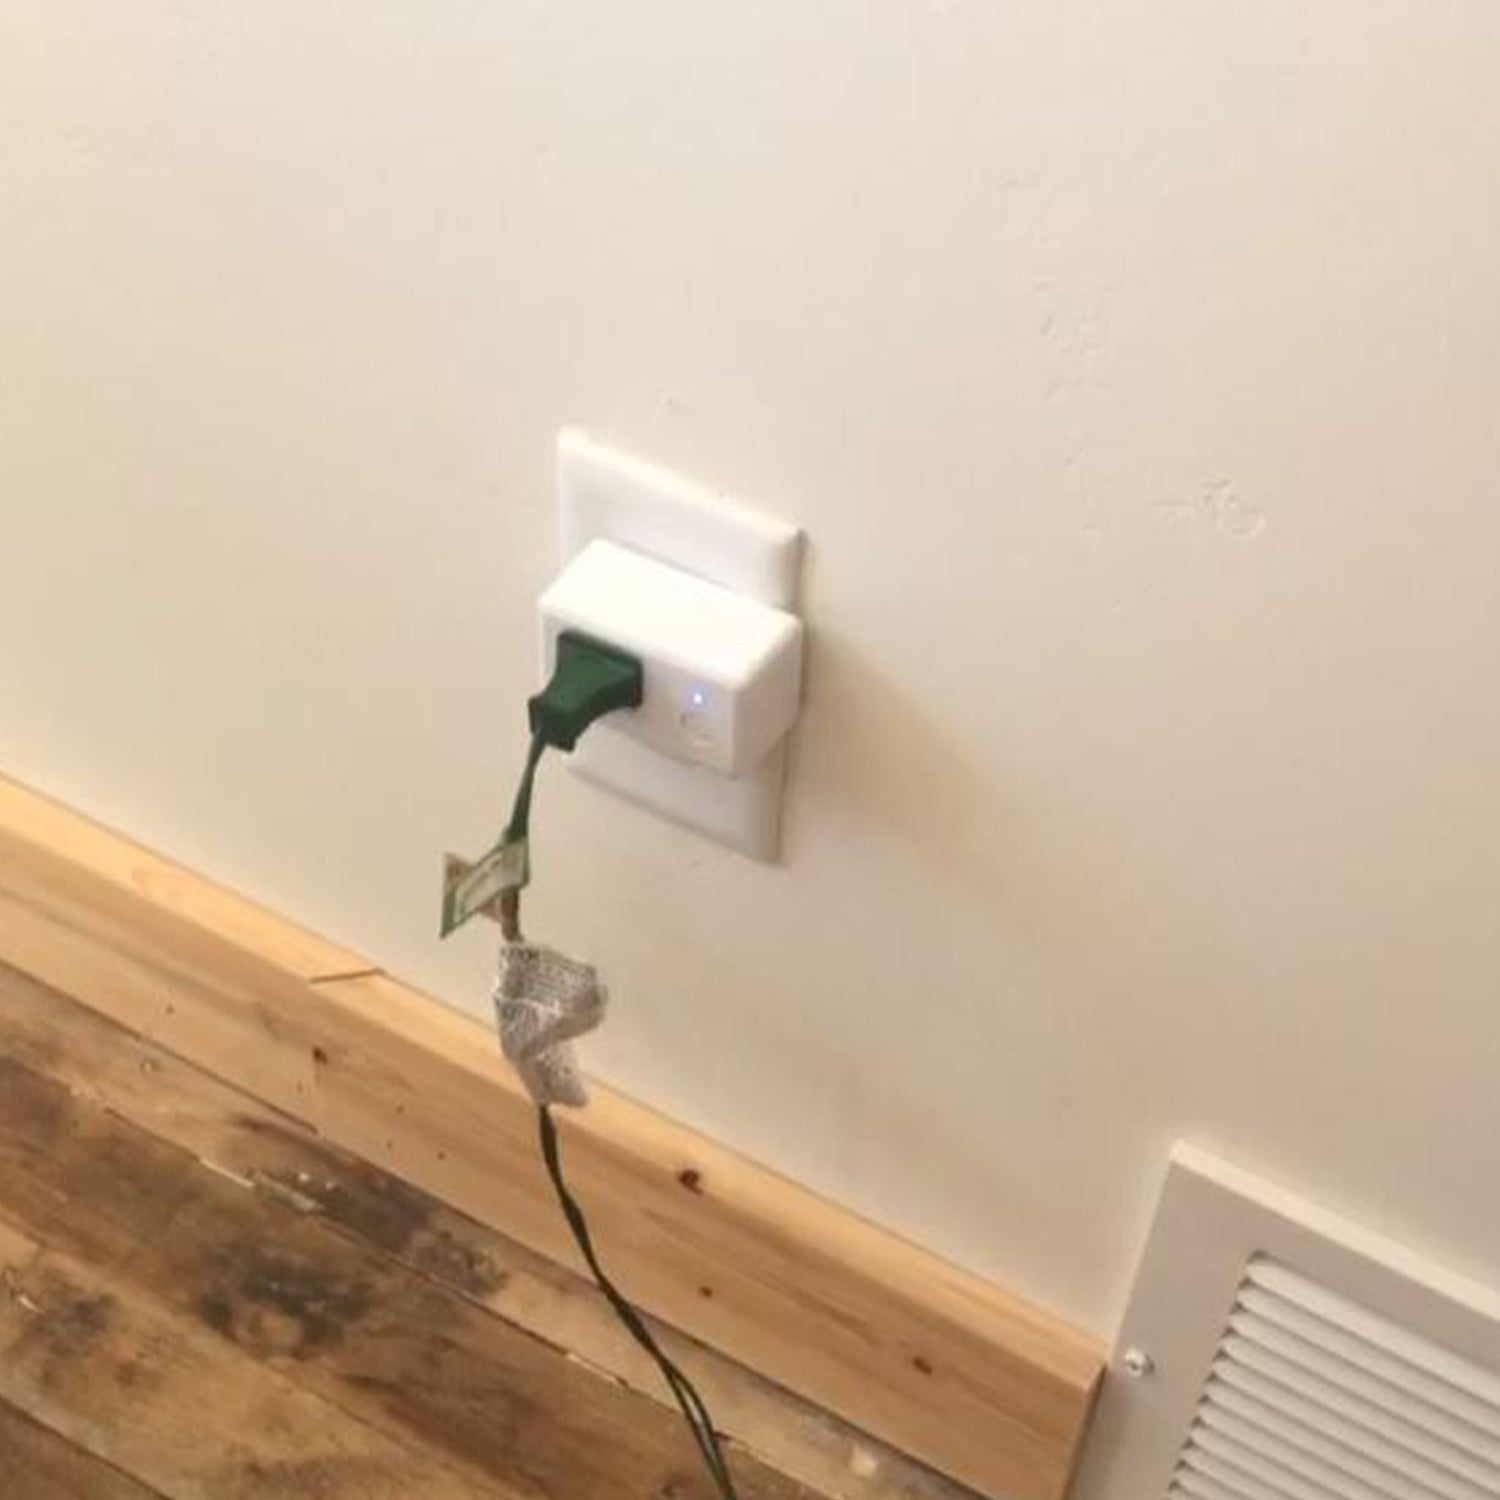 Indoor Smart WiFi Wall Plug Alexa / Google